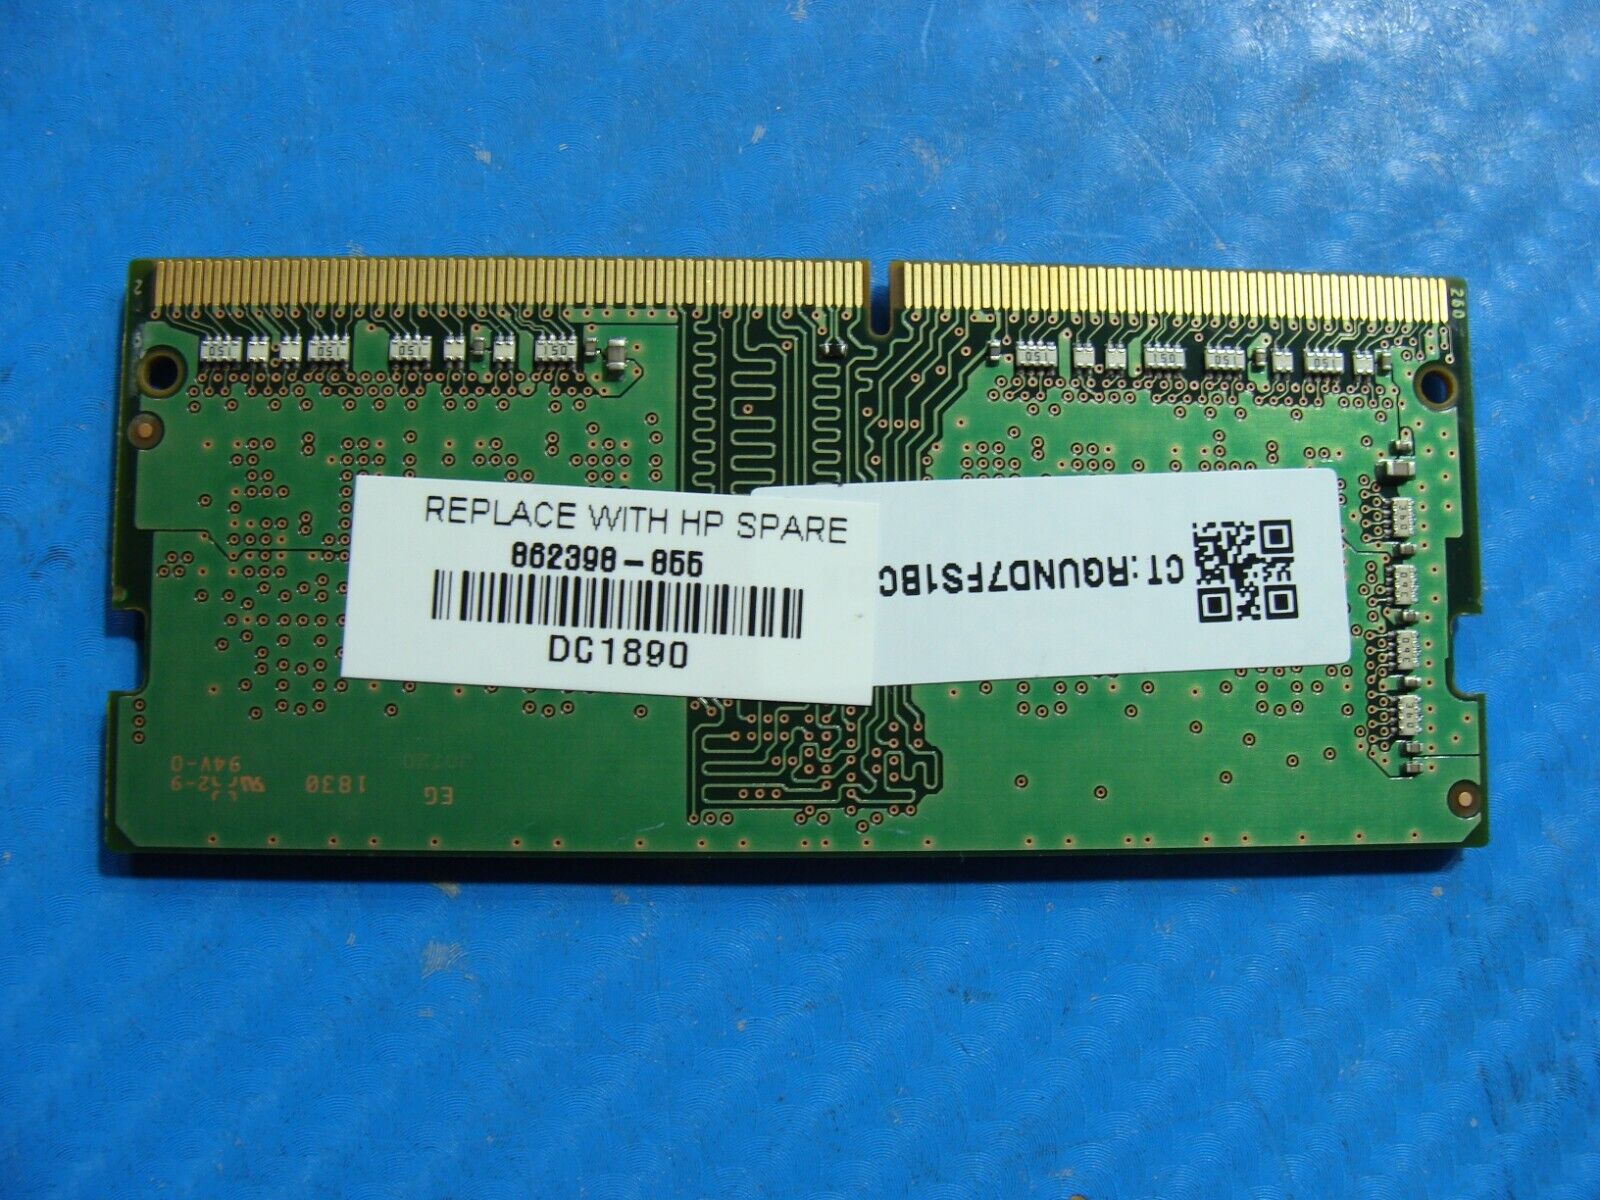 HP 15-cs0053cl Samsung 4GB 1Rx16 PC4-2666V SO-DIMM Memory RAM M471A5244CB0-CTD